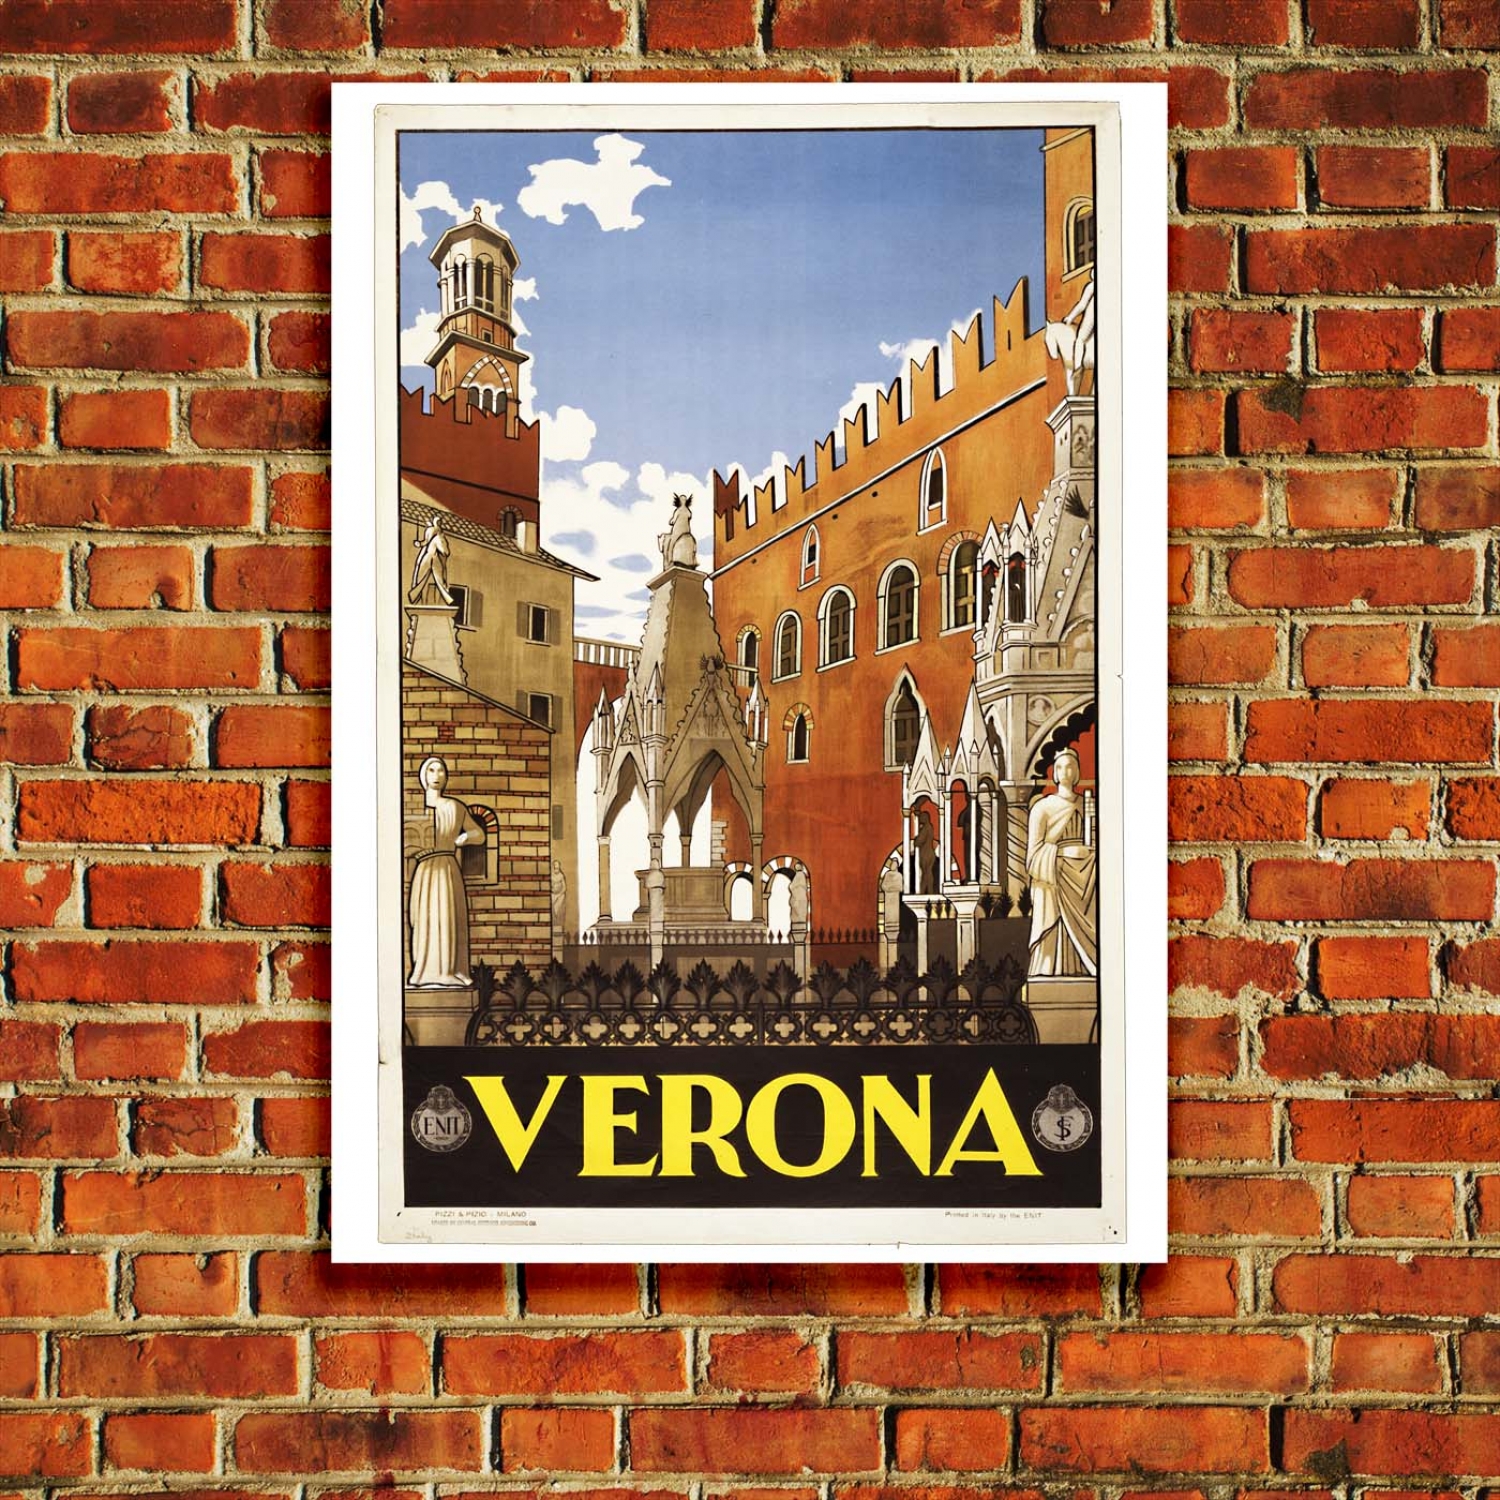 verona italy travel poster